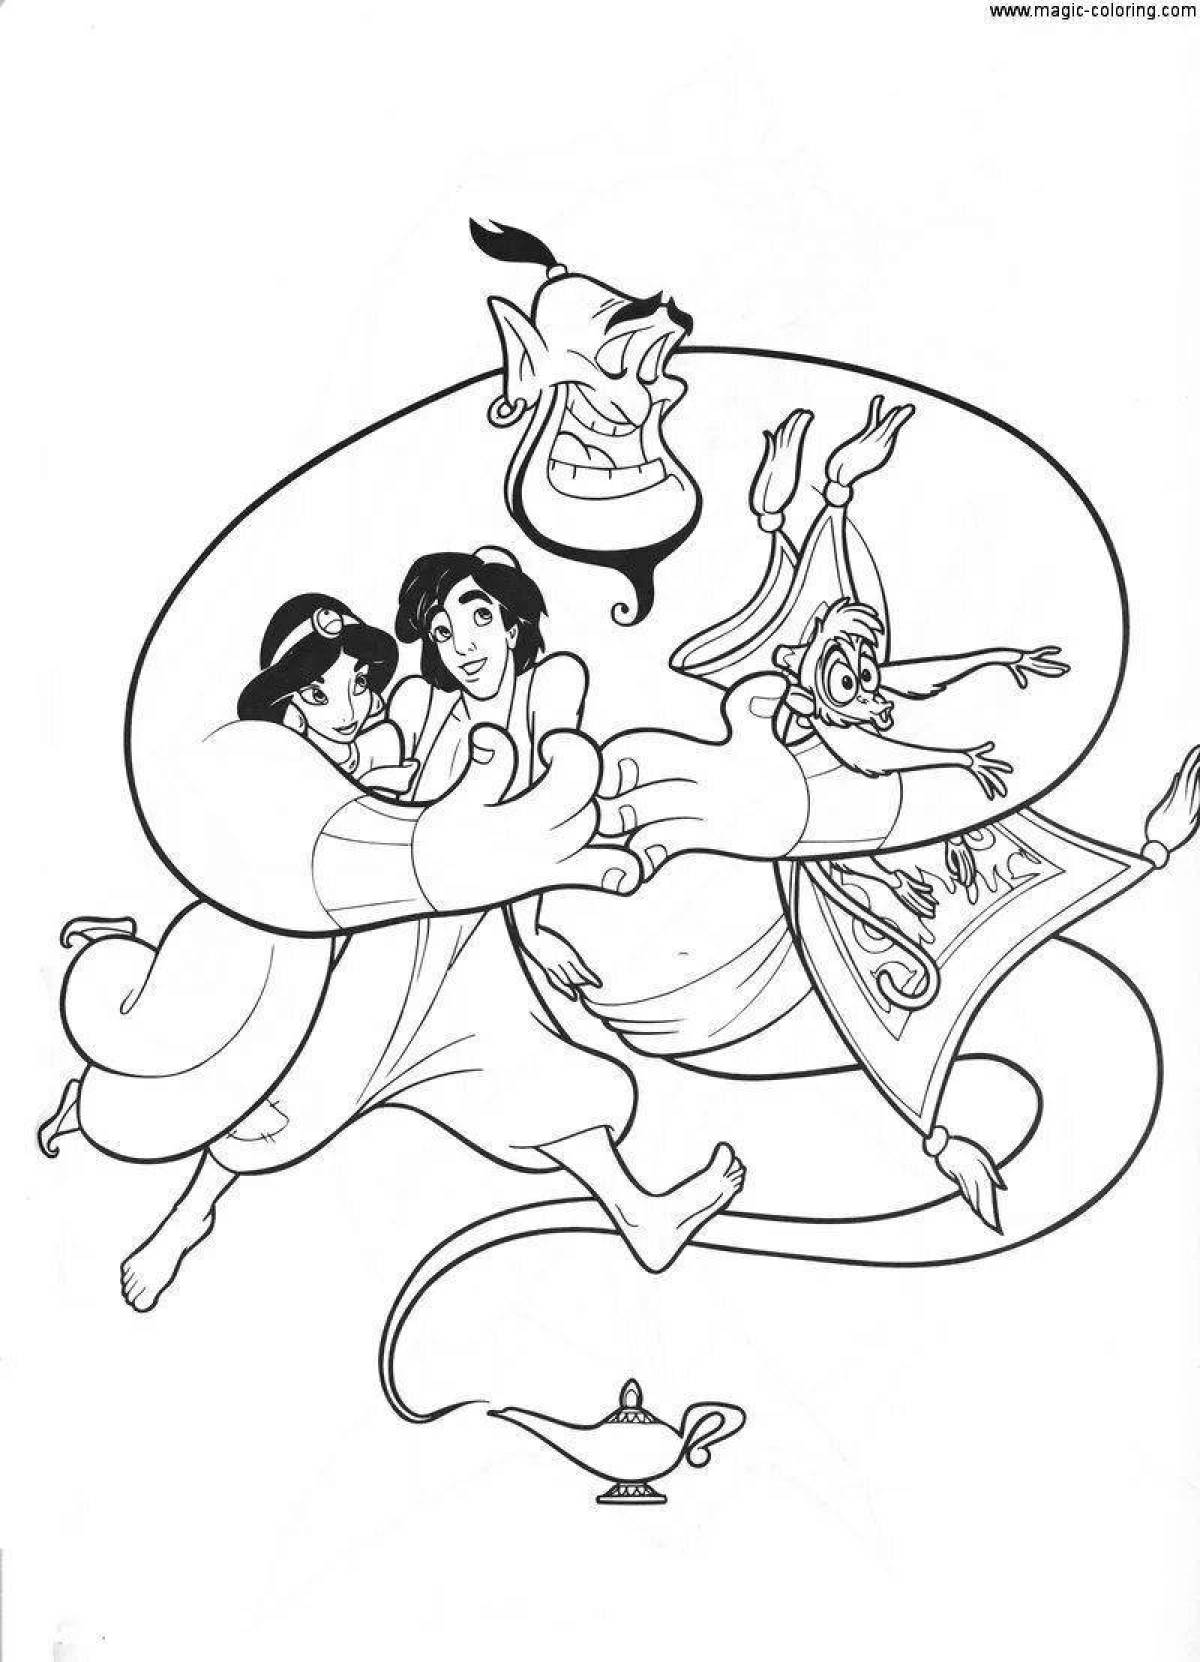 Adorable Disney Aladdin coloring book